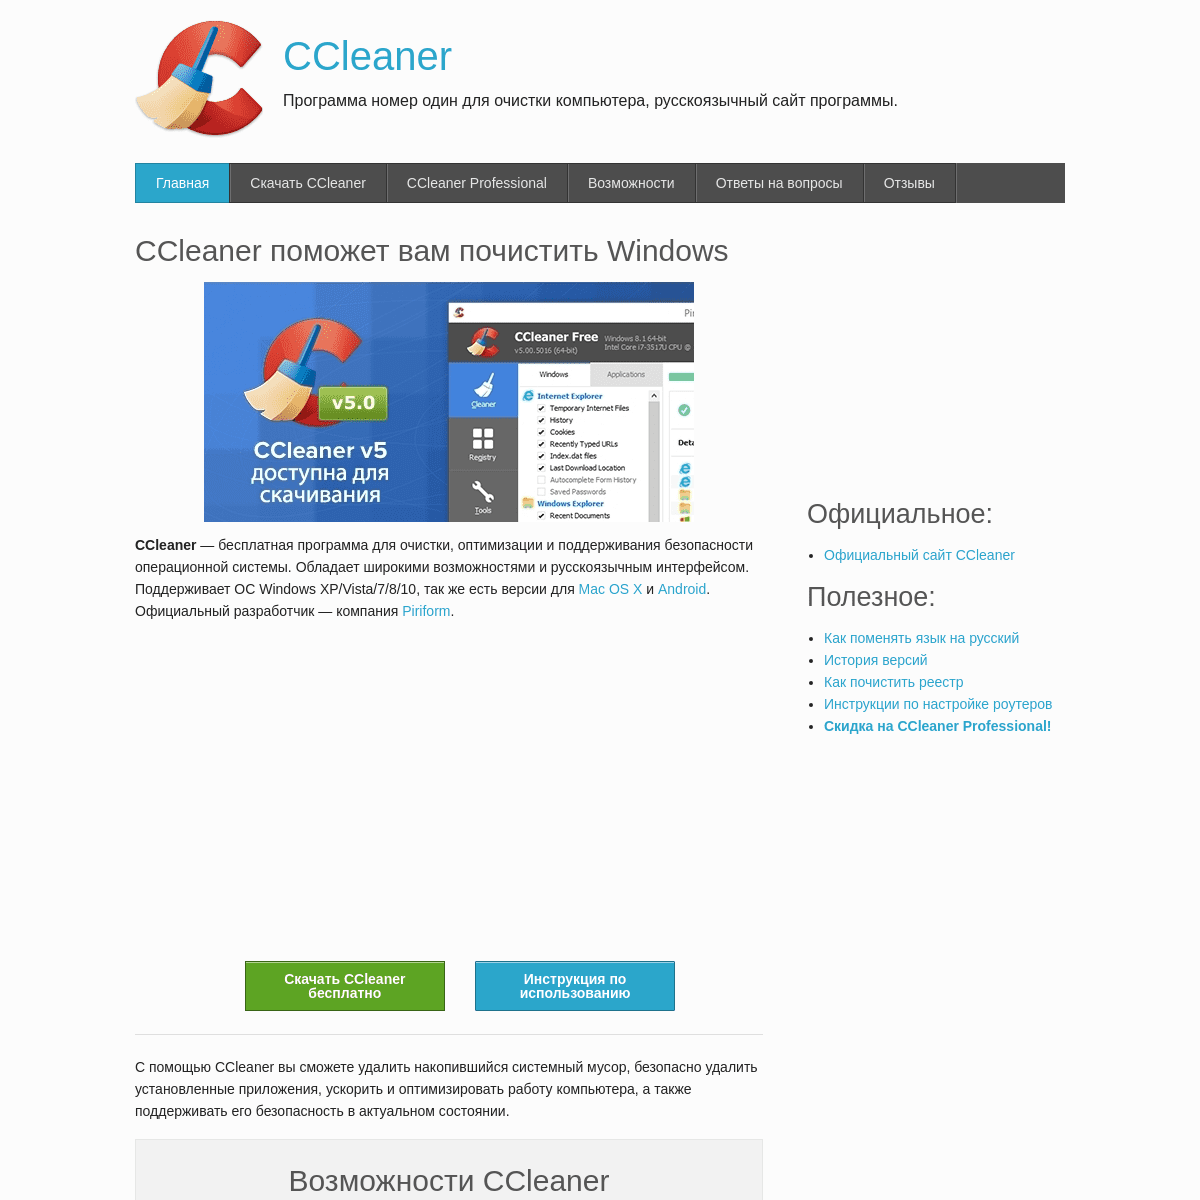 CCleaner русскоязычный сайт